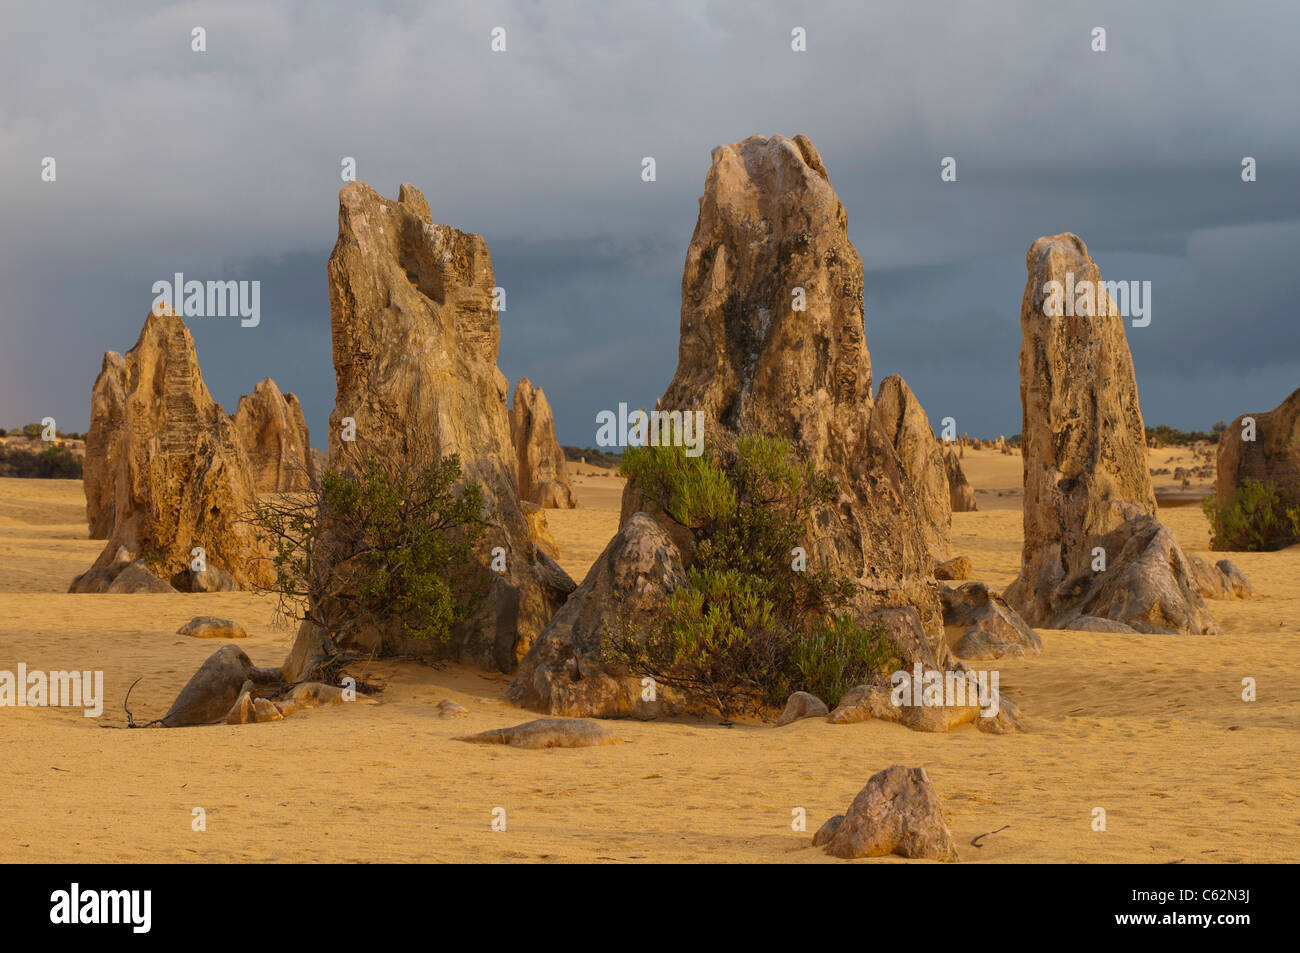 Le formazioni rocciose del Deserto Pinnacles National Park in Australia Occidentale Foto Stock